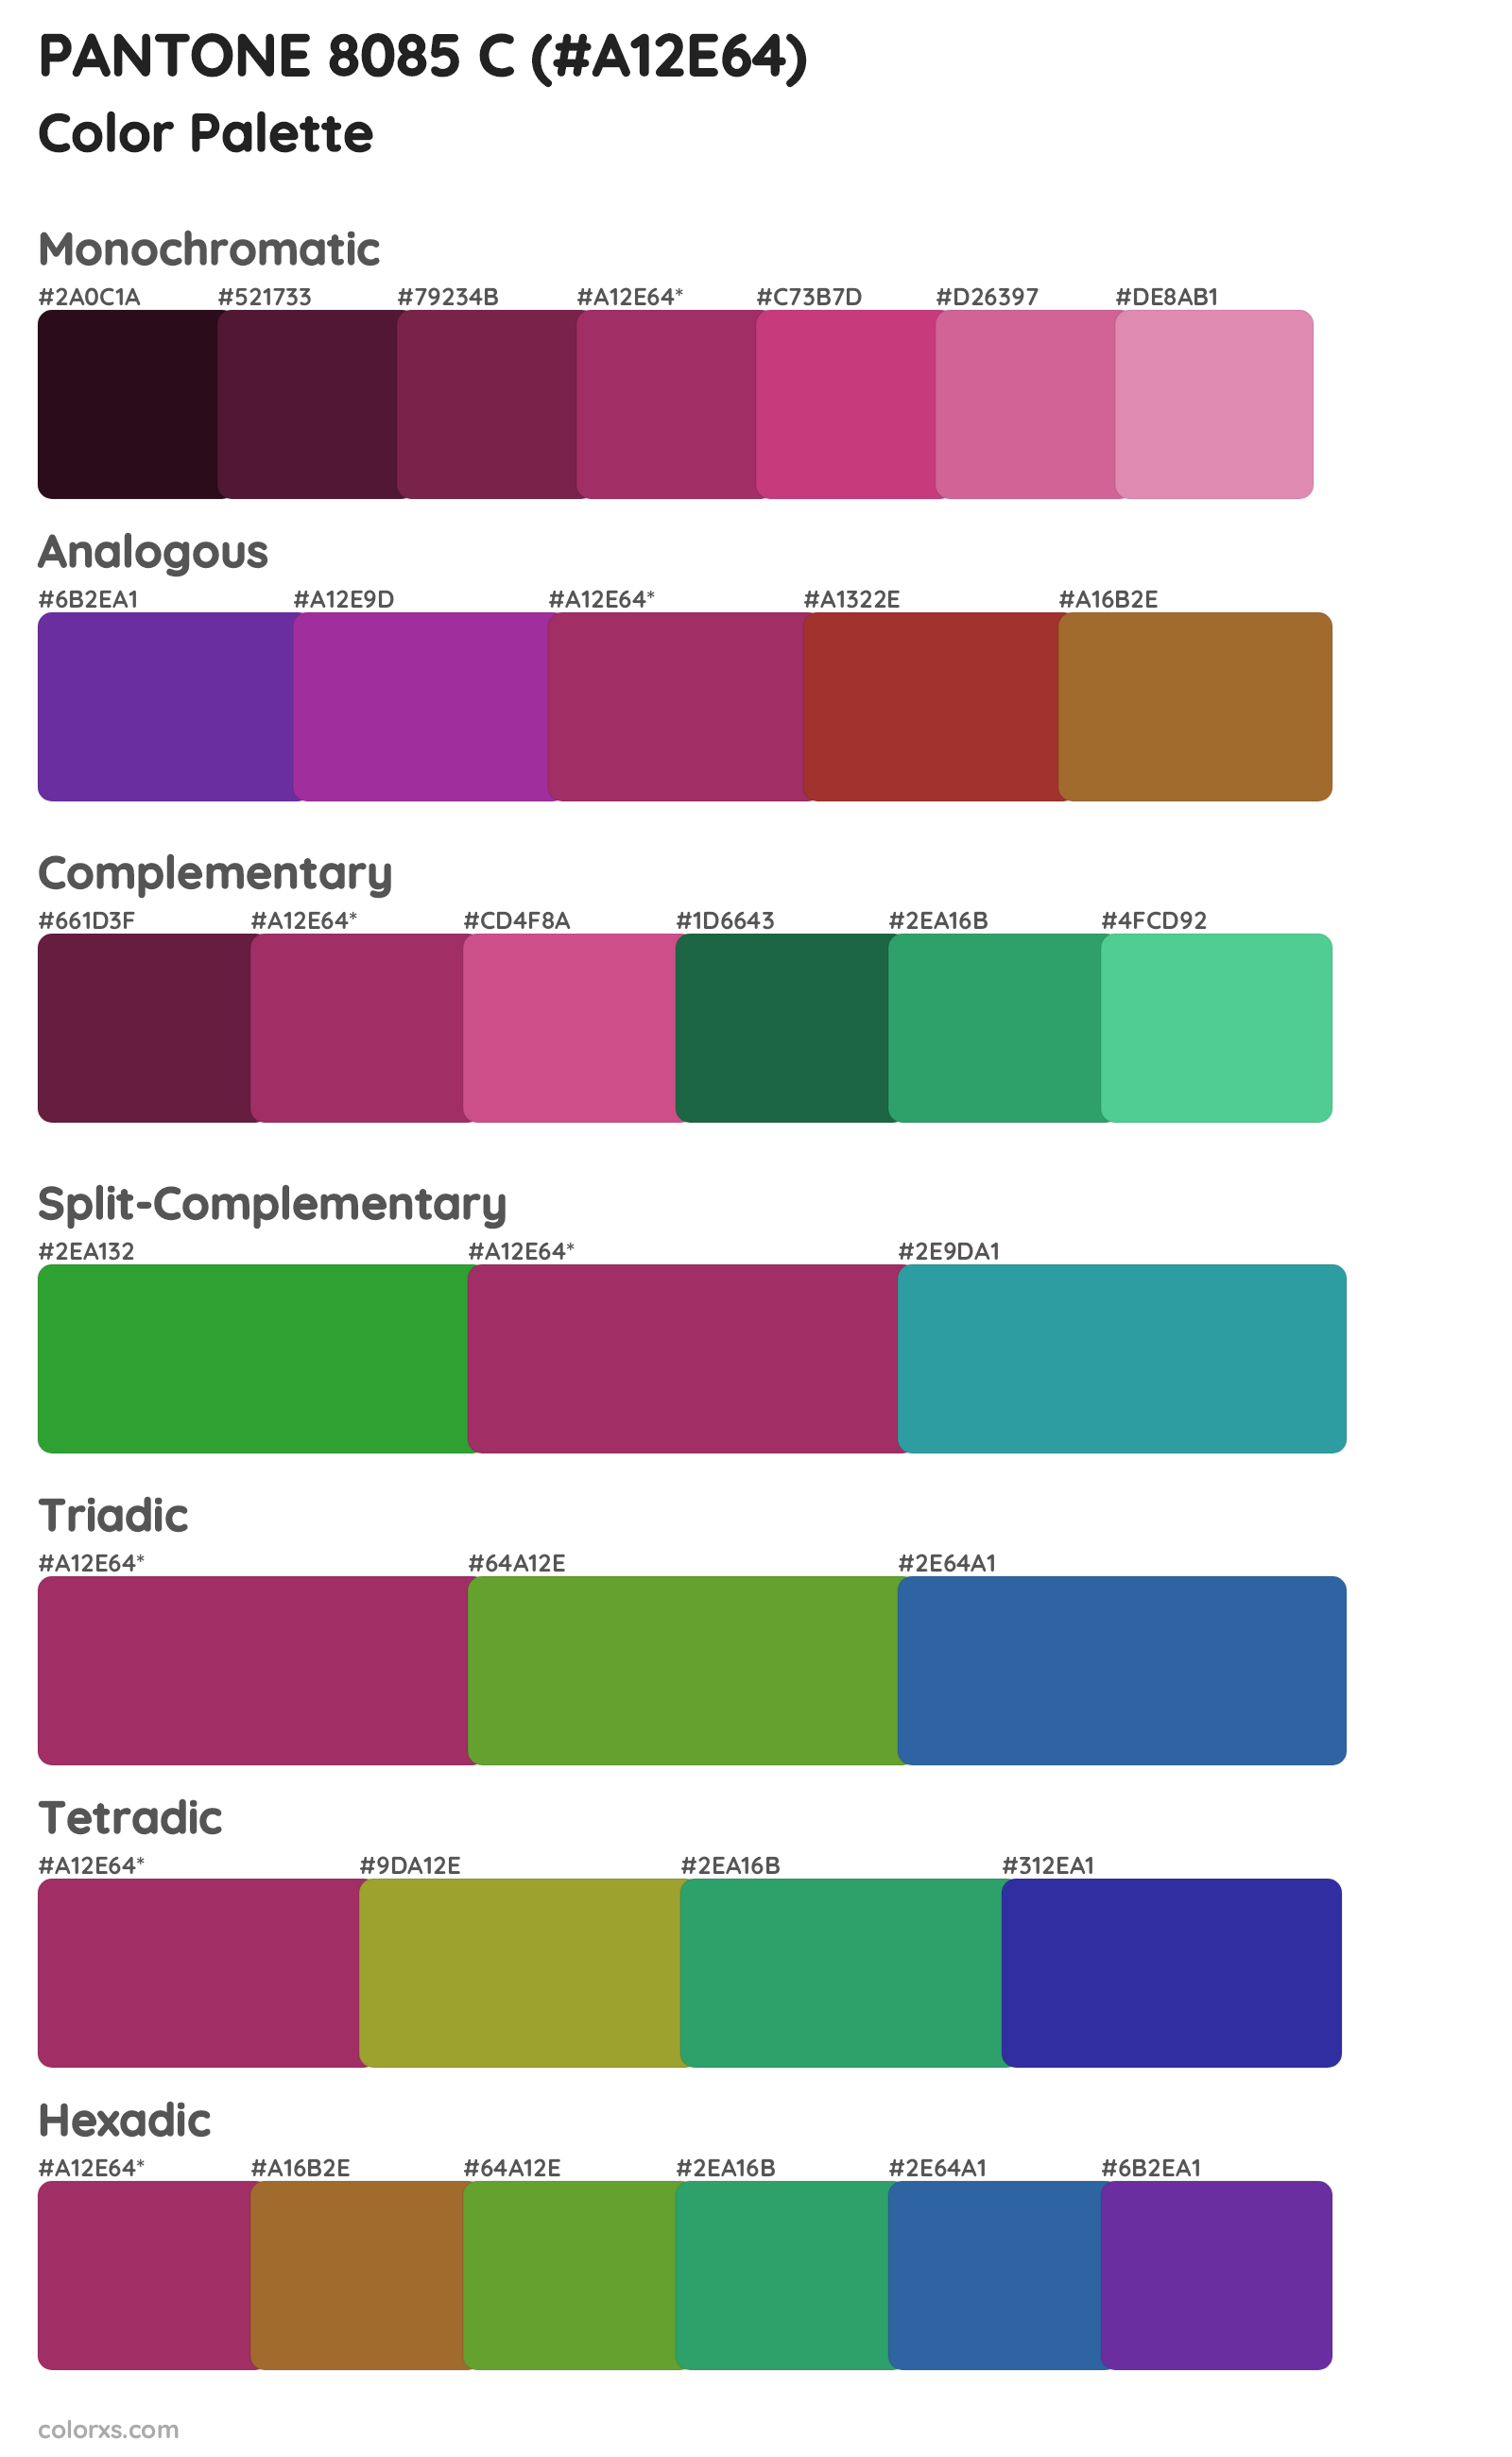 PANTONE 8085 C Color Scheme Palettes